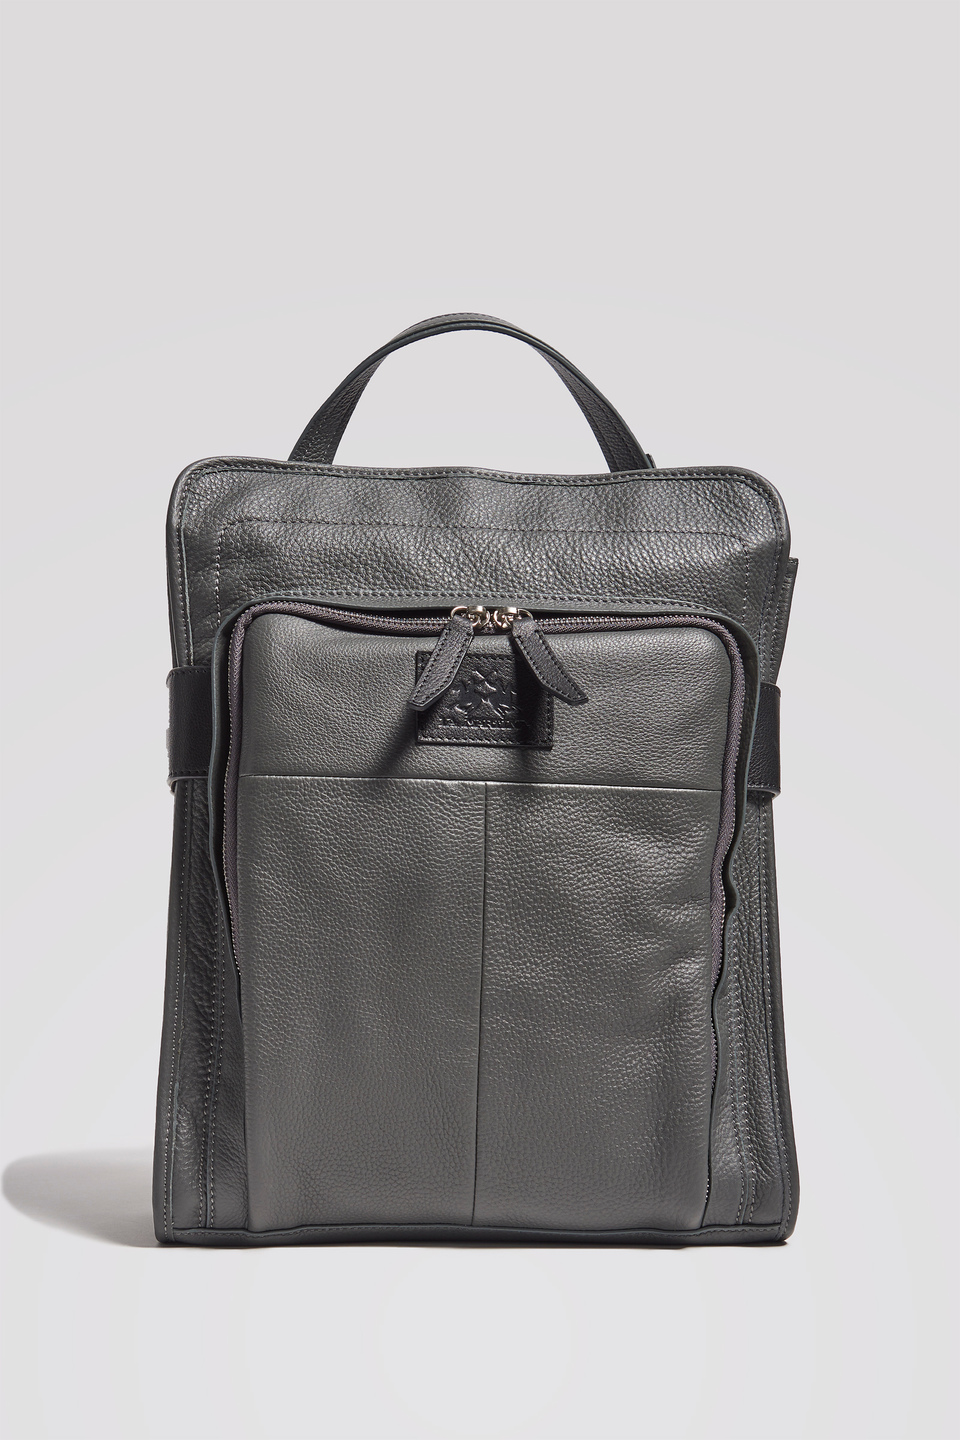 Rectangular hammered leather backpack | La Martina - Official Online Shop